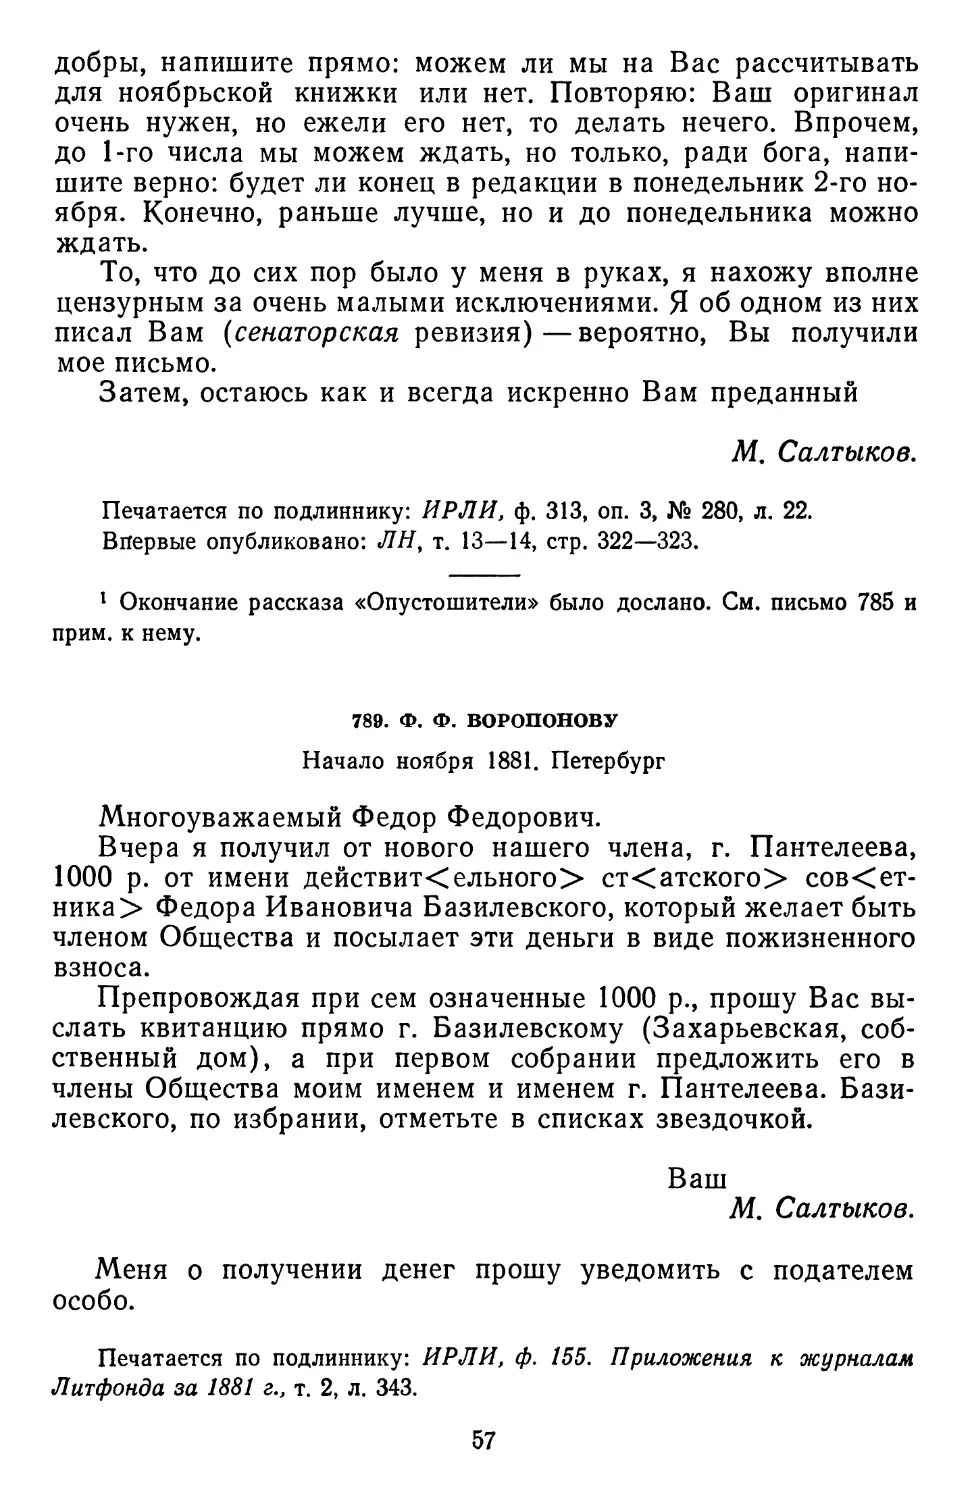 789.Ф. Ф. Воропонову. Начало ноября 1881. Петербург